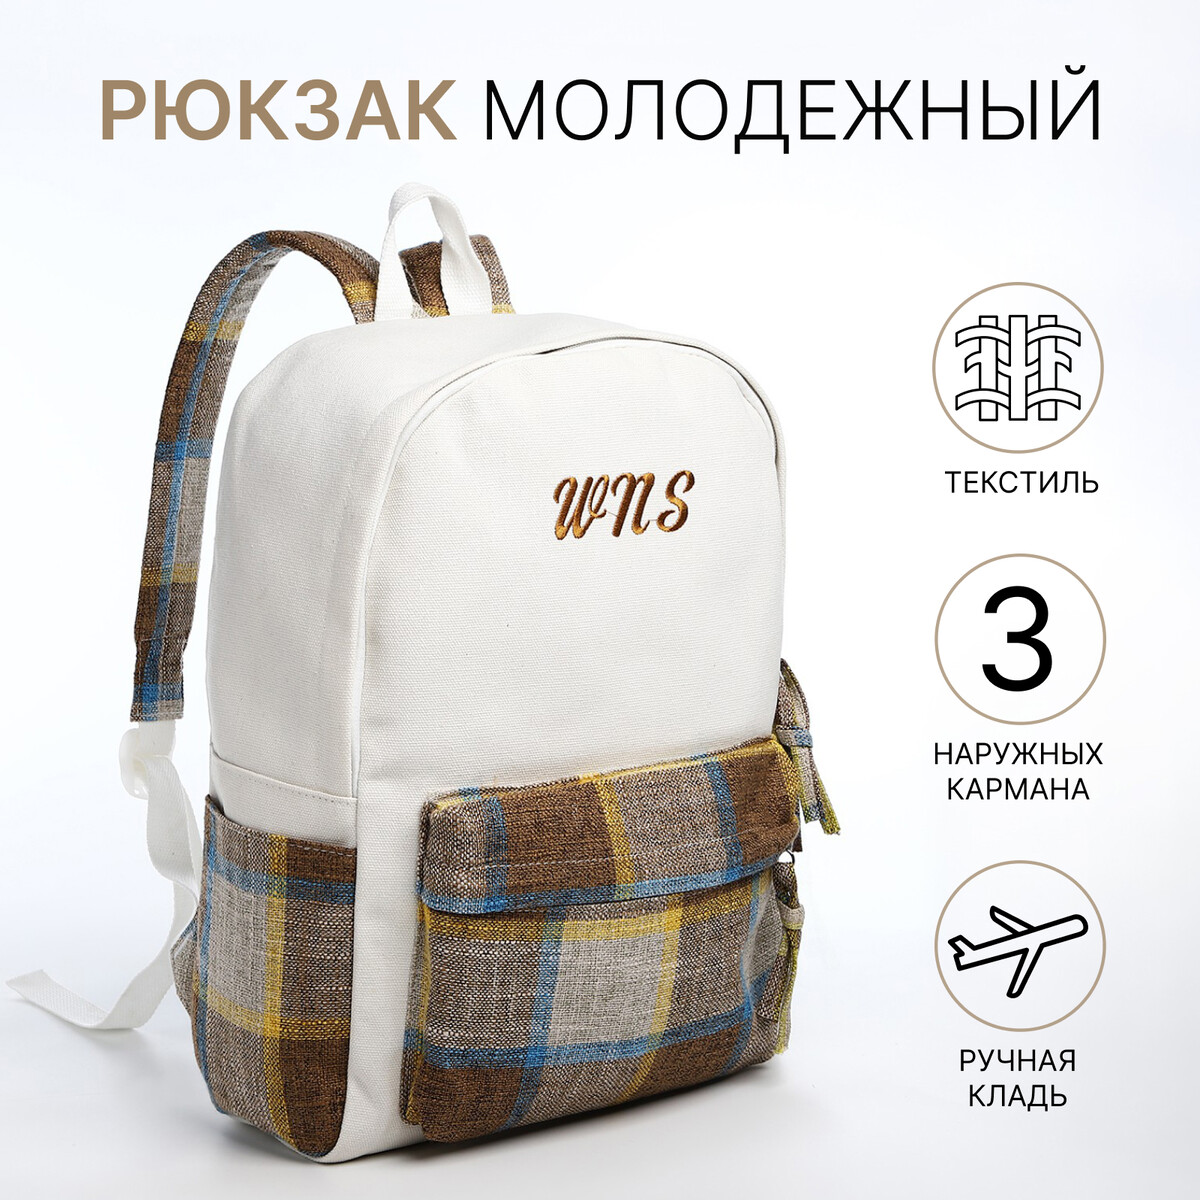 Рюкзак молодежный из текстиля, 3 кармана, цвет белый/коричневый/голубой